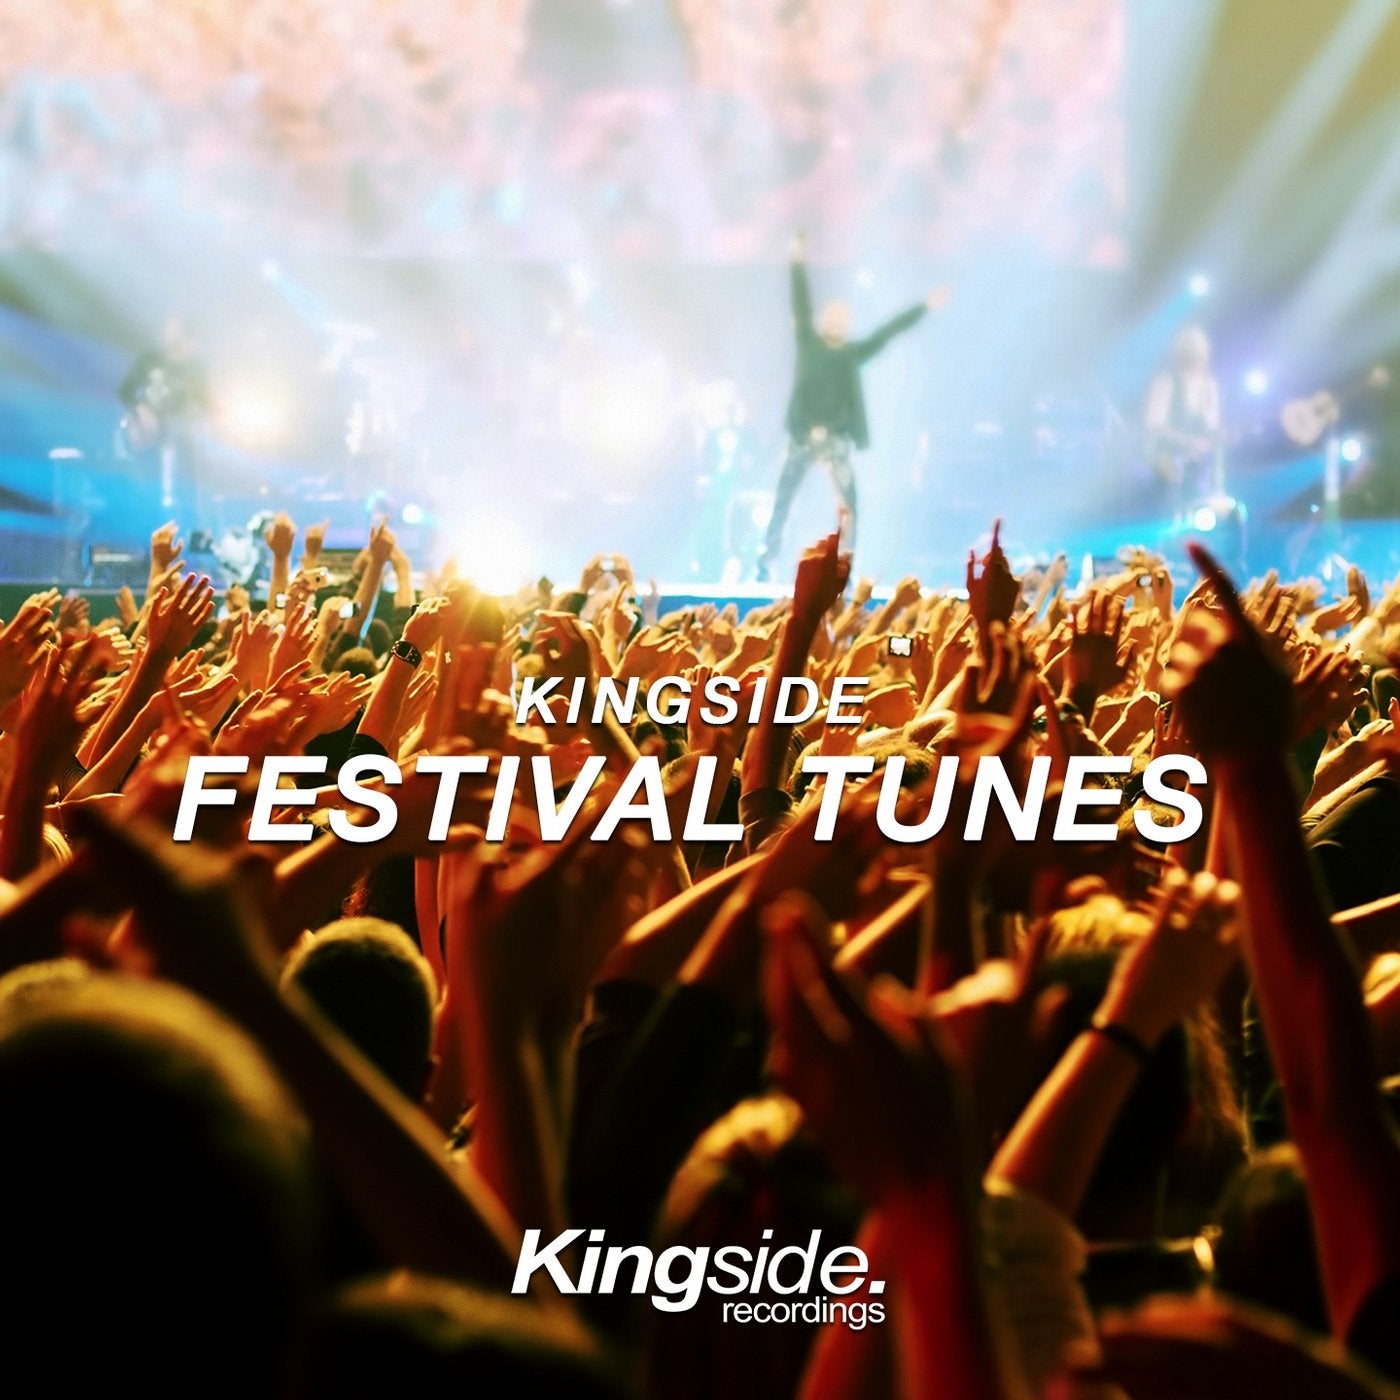 Kingside Festival Tunes